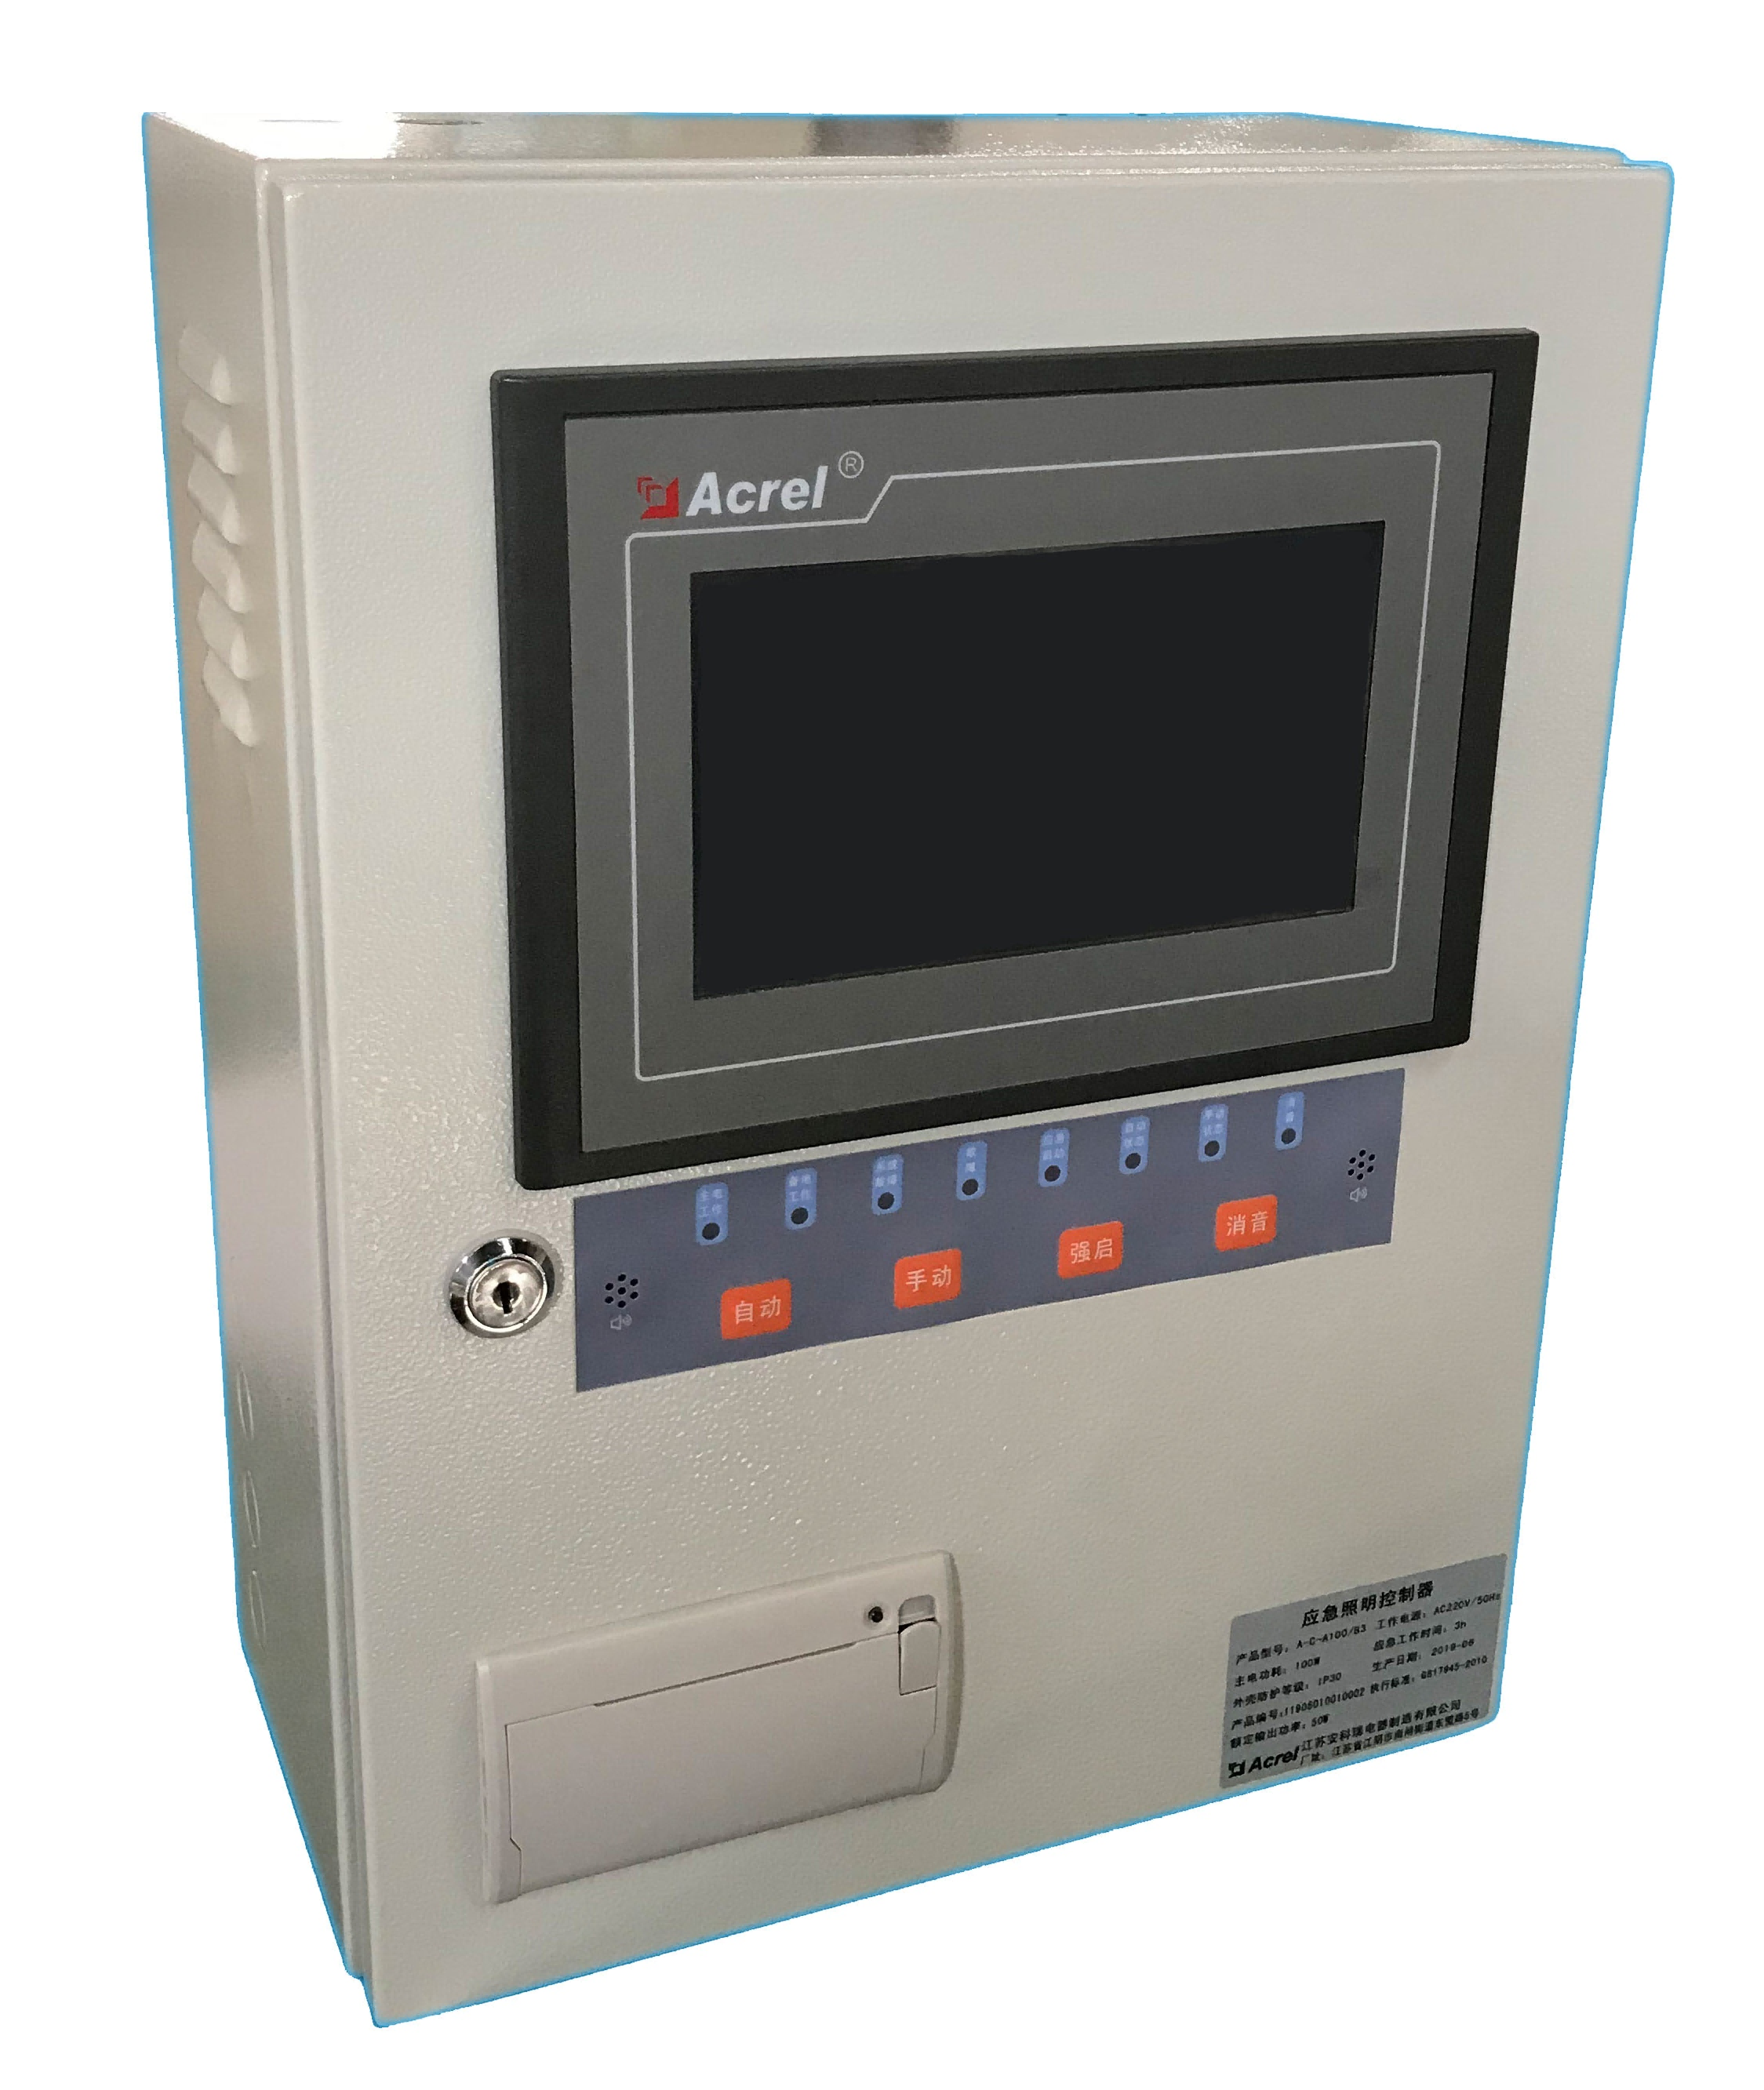 安科瑞 Acrel-6000/B3 RS485通讯 接收电气火灾监测探测器信号 电气线路监控、控制管理 电气火灾监控主机 远程智能I/O模块